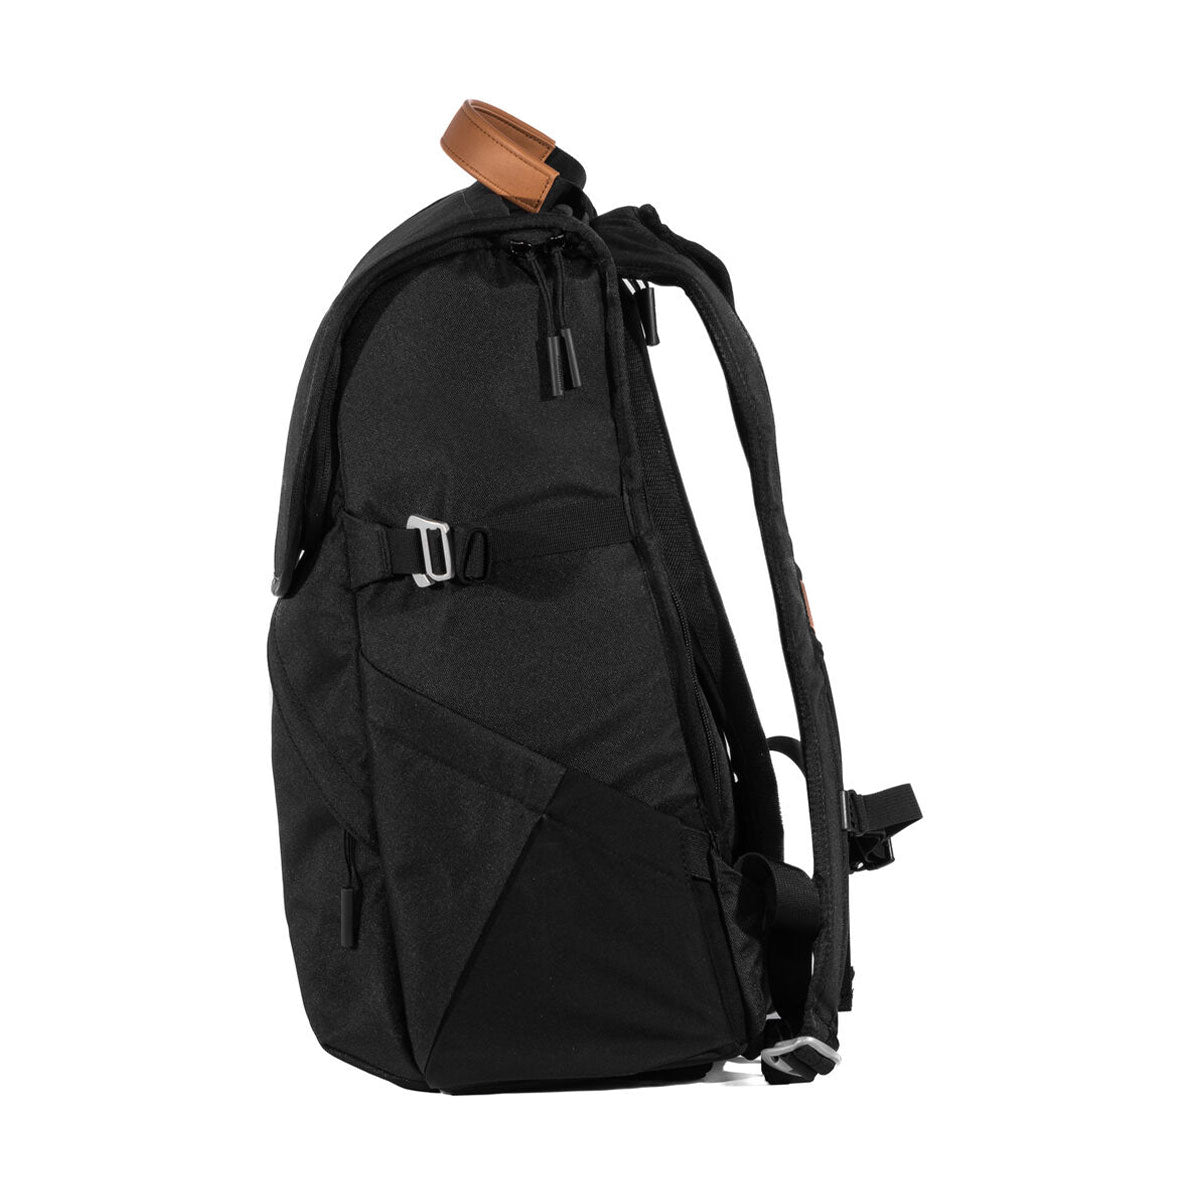 Holdland Original Backpack (Black, 28L)